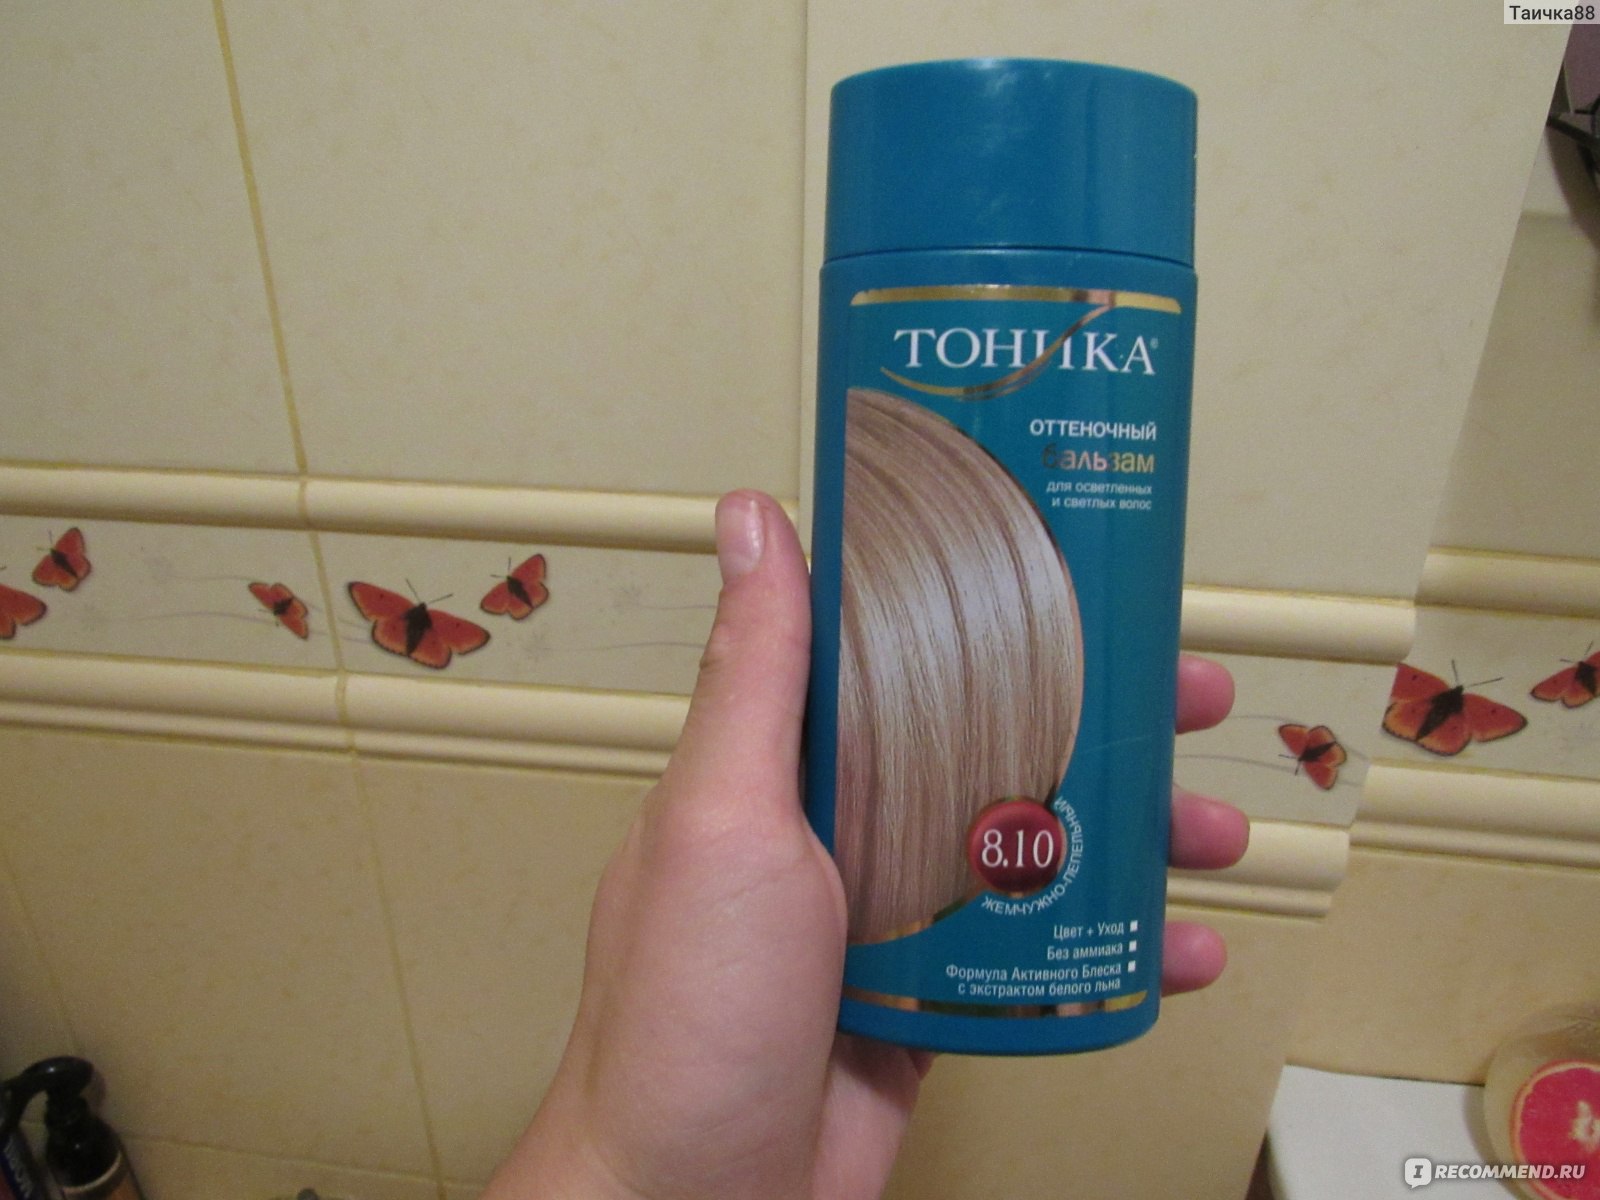 Тоника оттеночный бальзам палитра для темных волос до и после фото